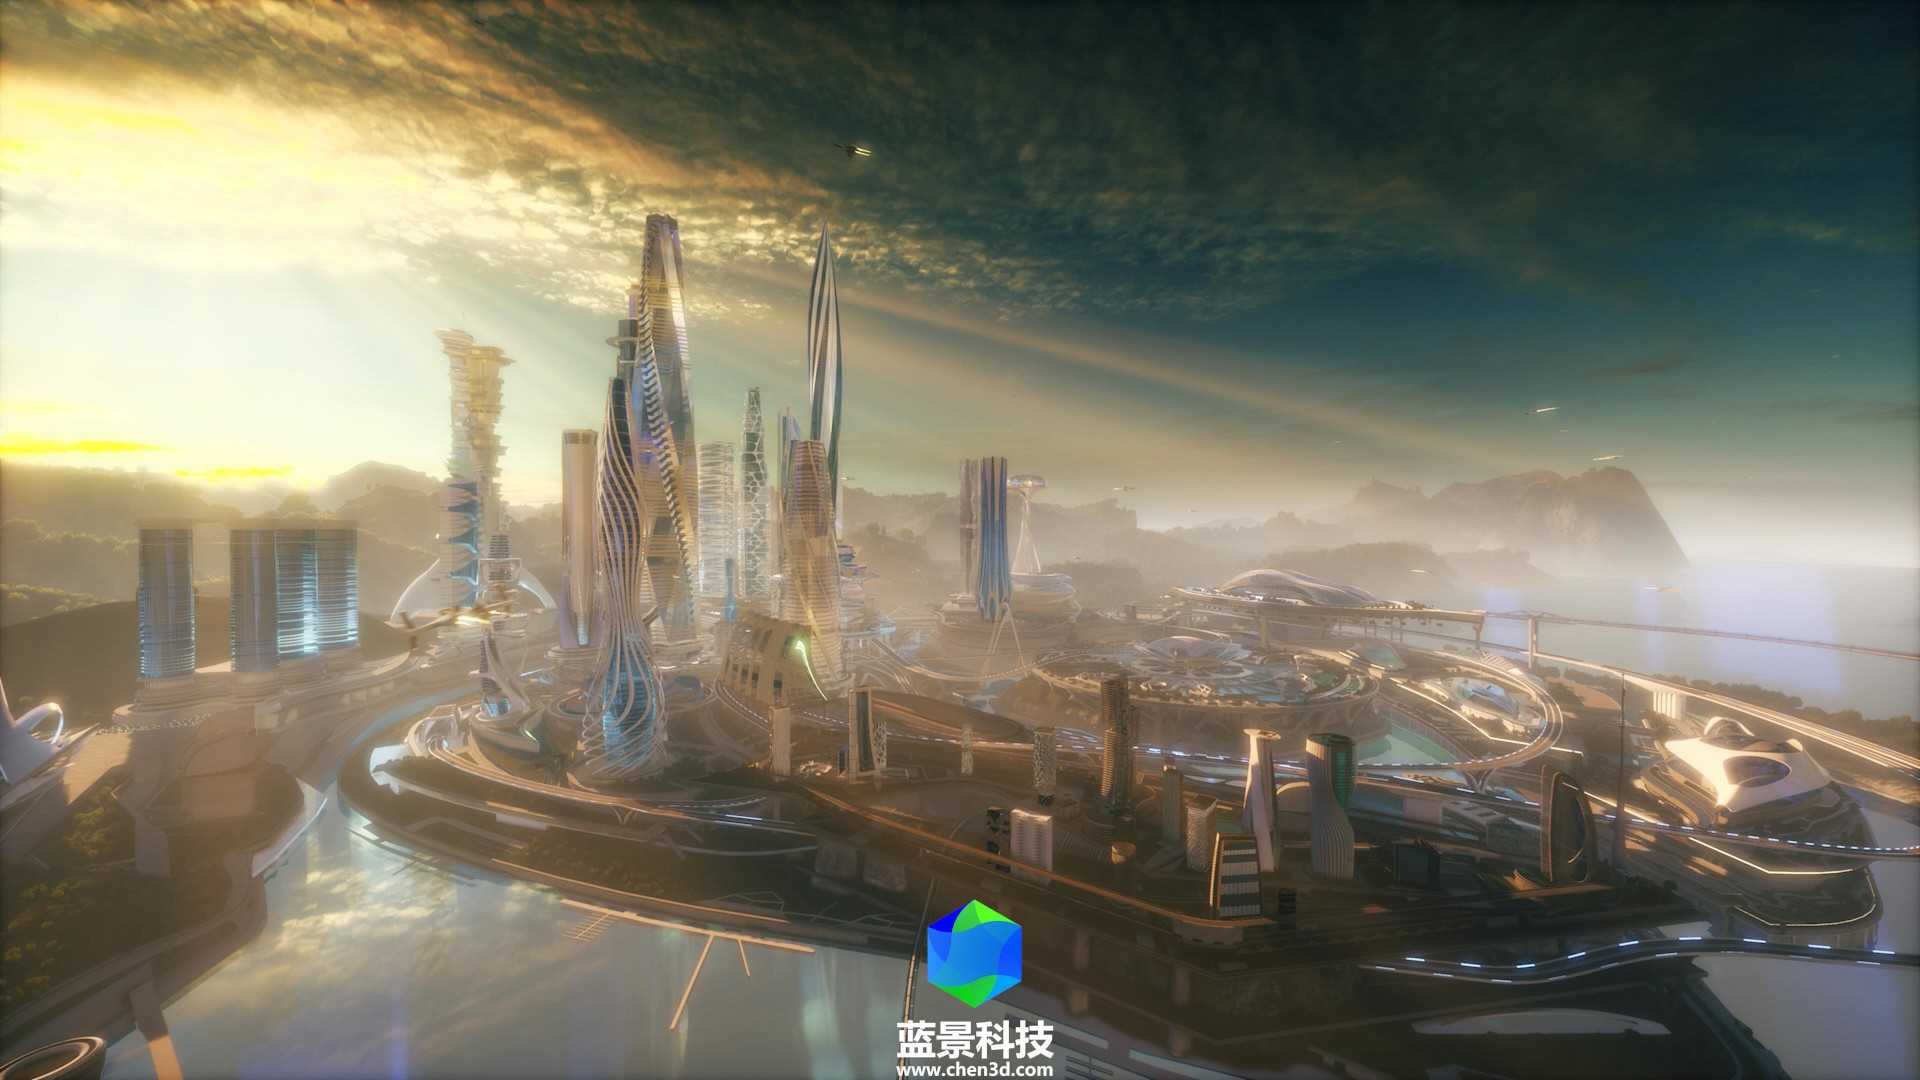 元宇宙 未来城市 数字孪生 元宇宙 虚幻 虚拟现实 虚拟世界 数字城市 智慧城市